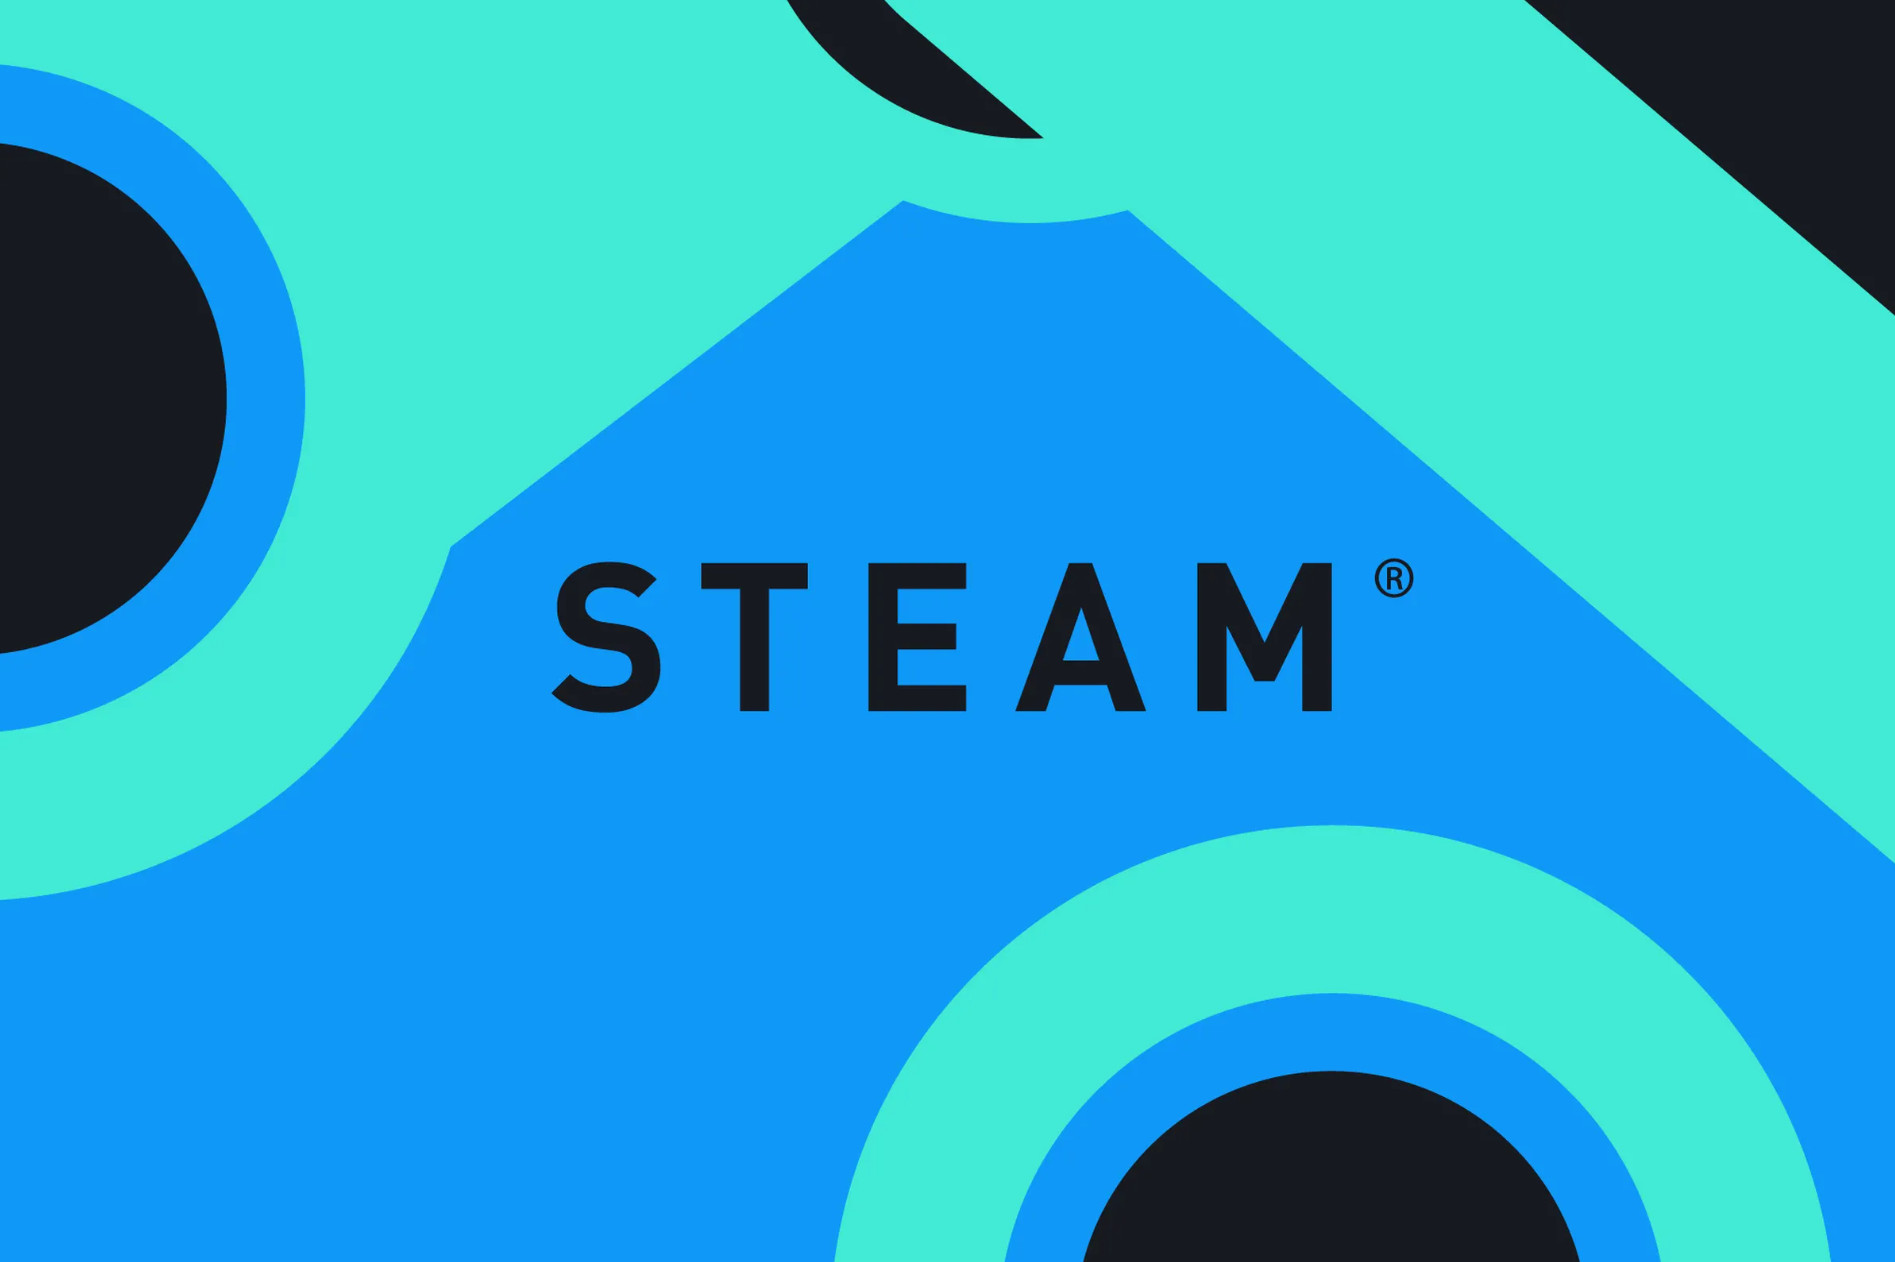 独立游戏开发者曝光V社总员工数 负责Steam运营仅79人